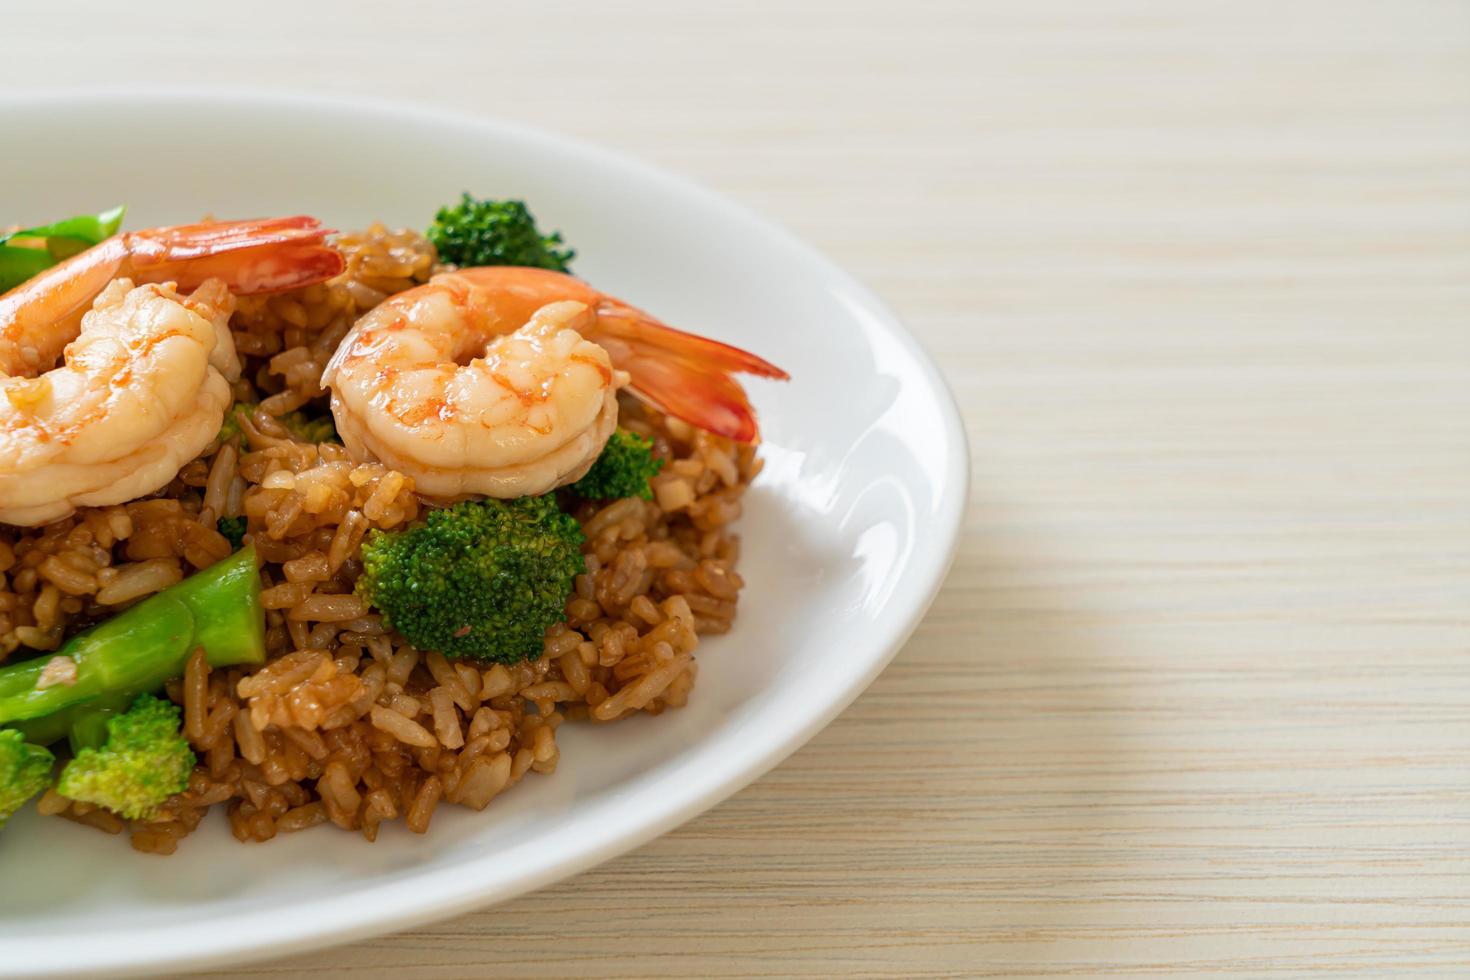 arroz frito com brócolis e camarão - comida caseira foto